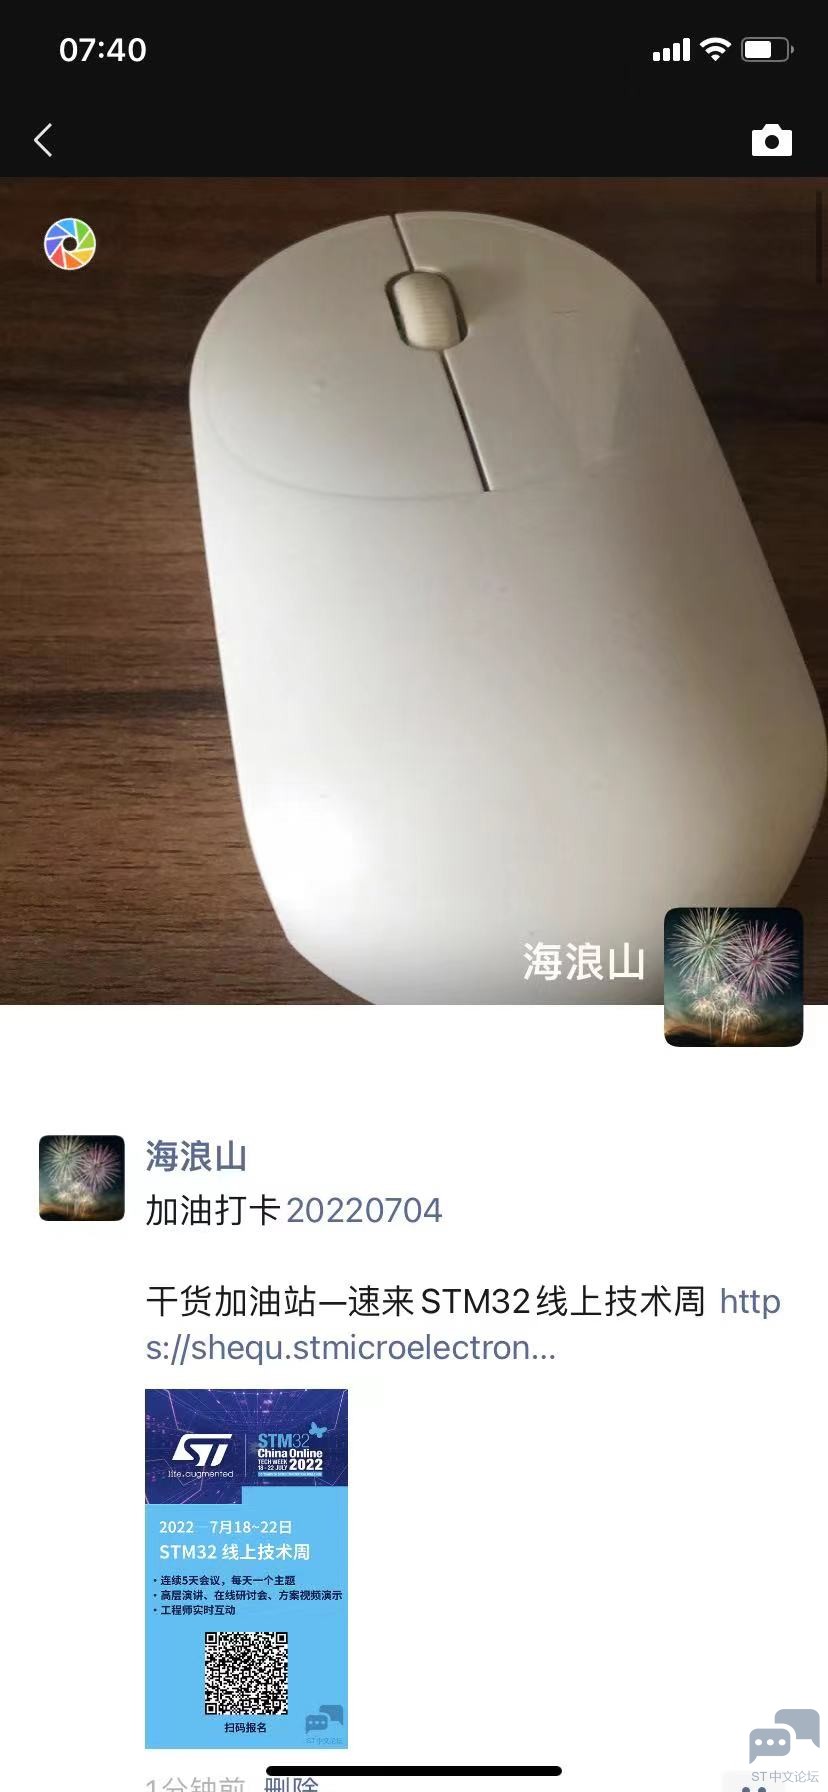 WeChat Image_20220704074241.jpg